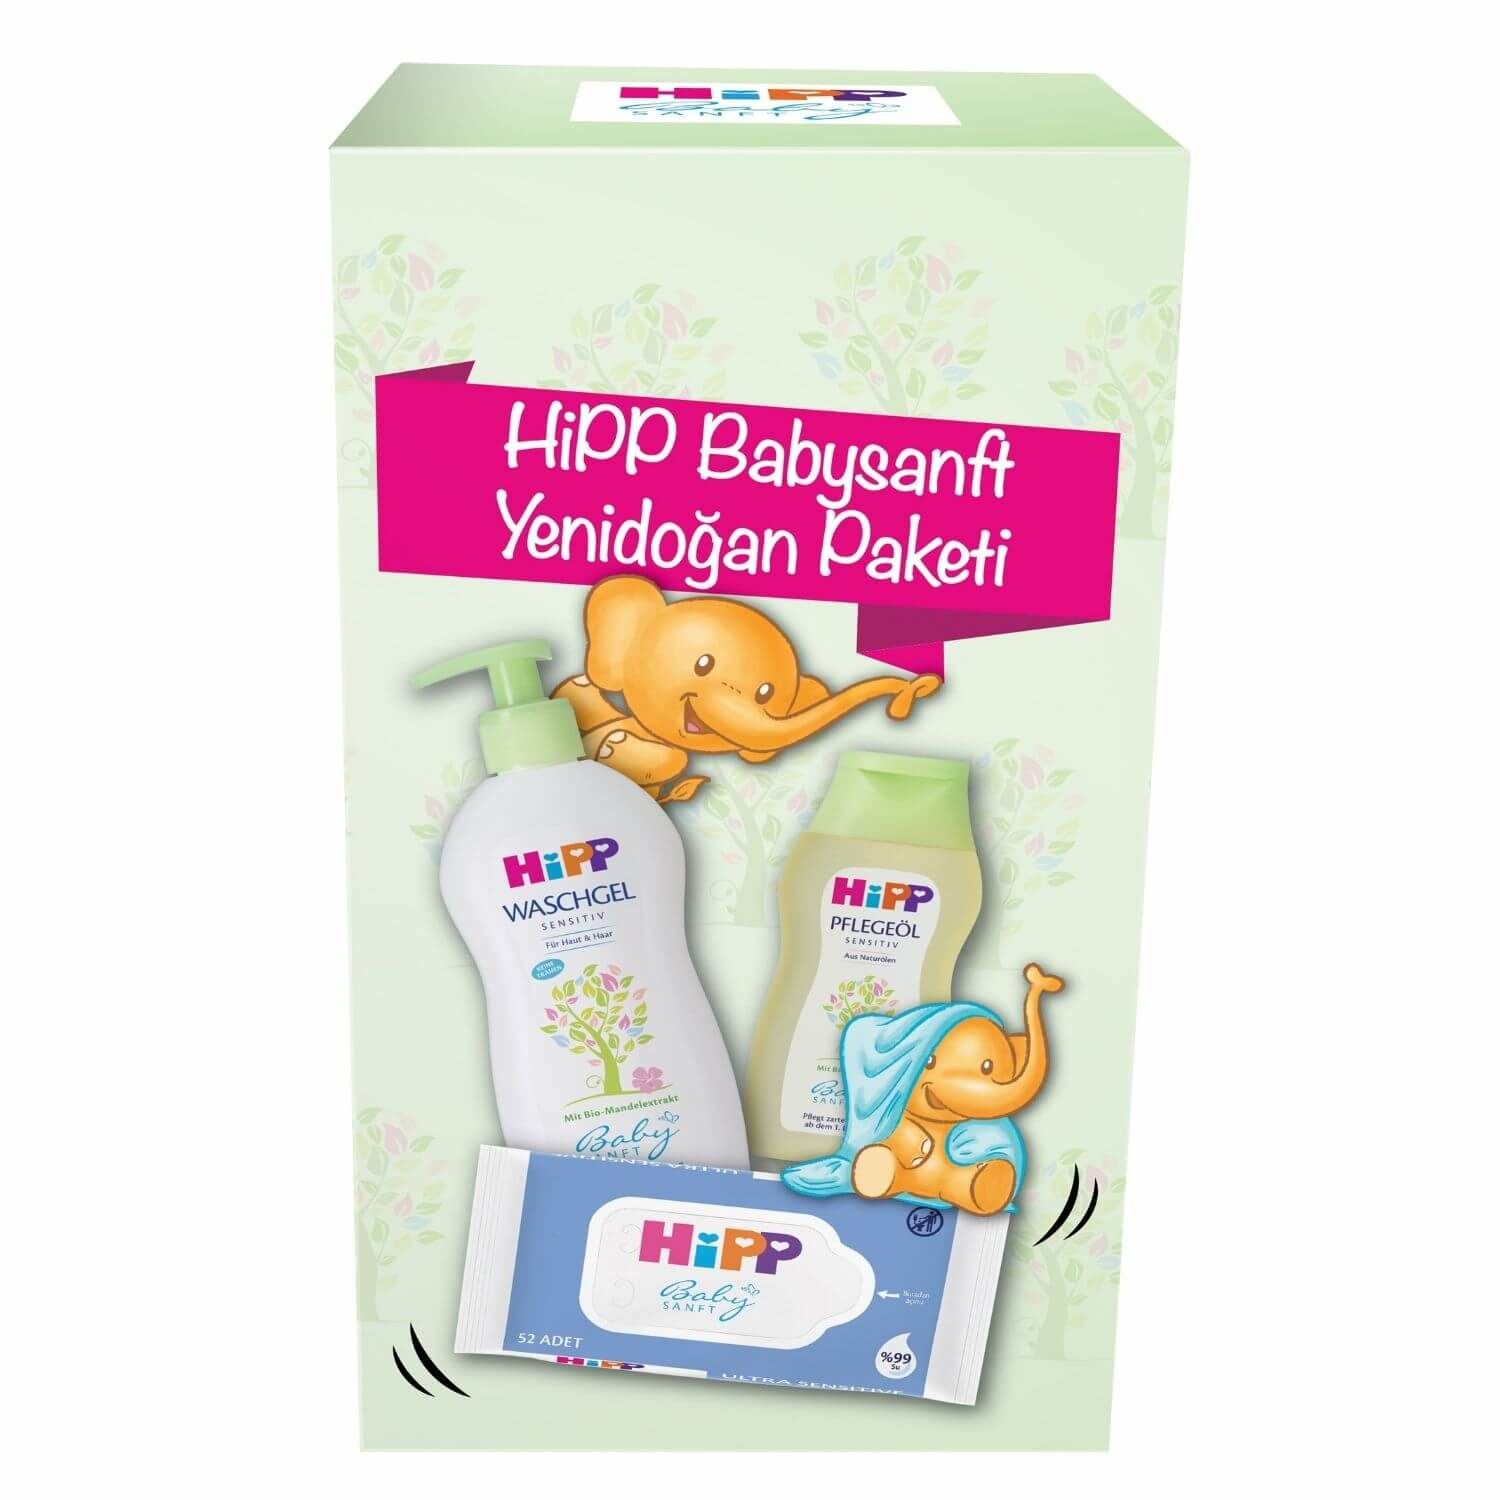 Hipp Babysanft Yenidoğan Fırsat Paketi